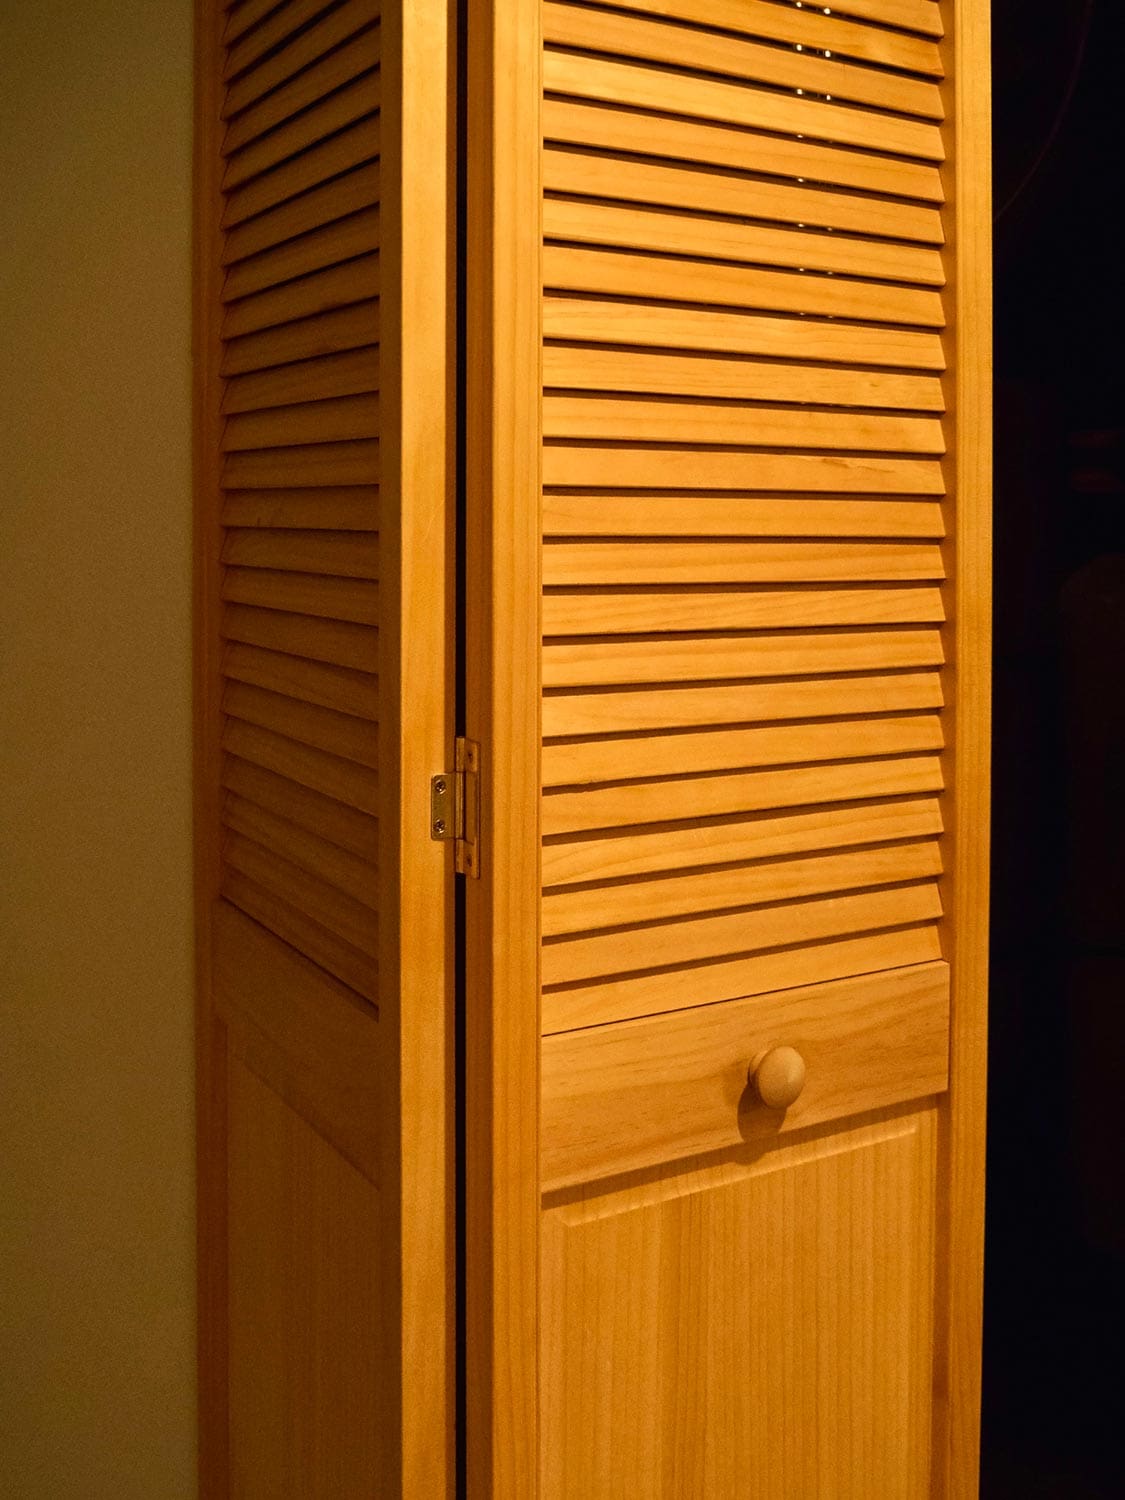 Yellow bi-fold utility door with door knob